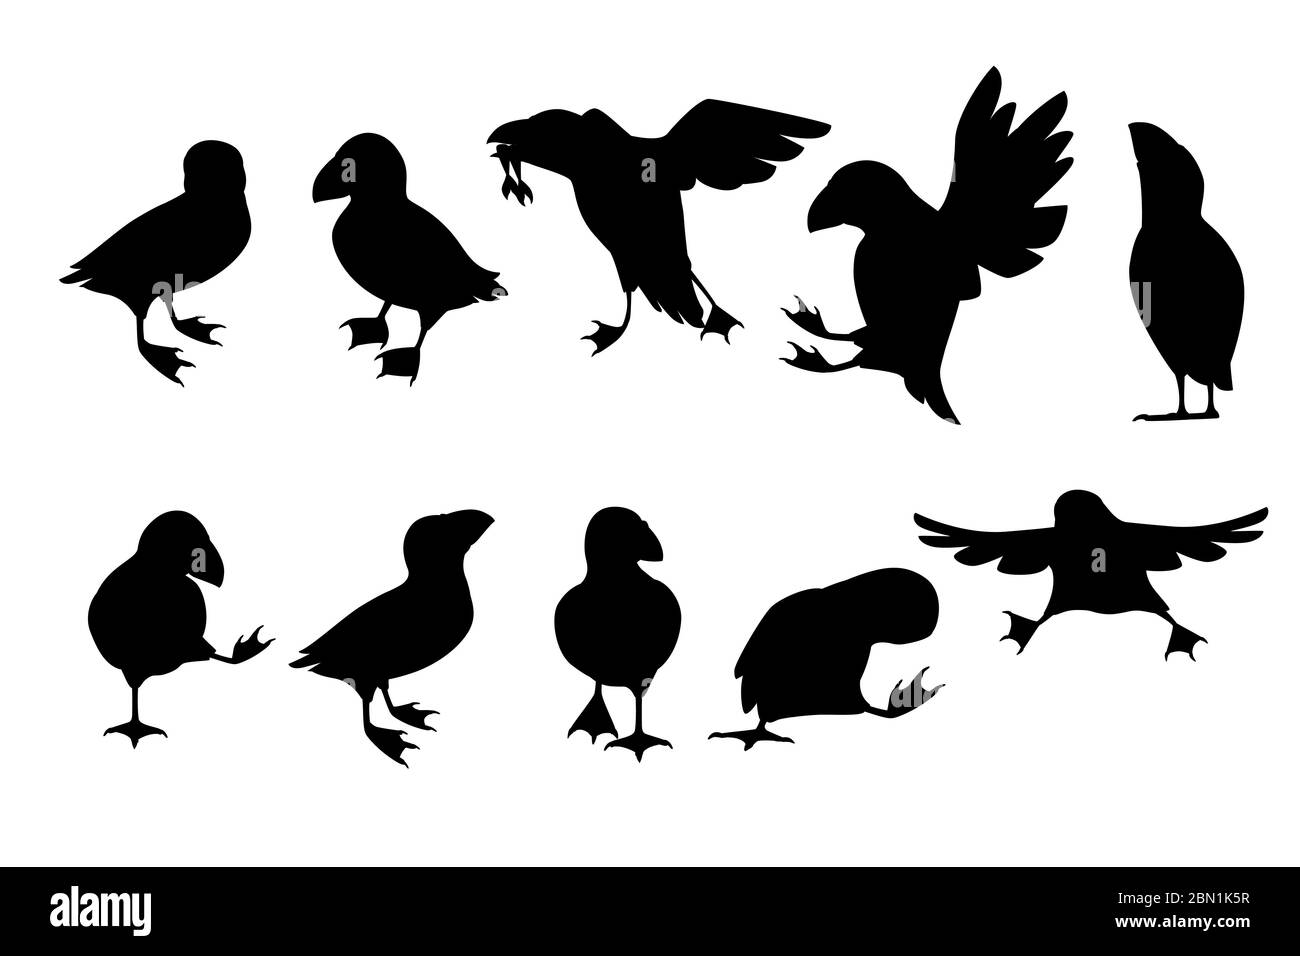 Ensemble de silhouette noire de l'oiseau de macareux de l'atlantique dans différentes poses dessin animé animal dessin illustration vectorielle plate isolée sur fond blanc Illustration de Vecteur